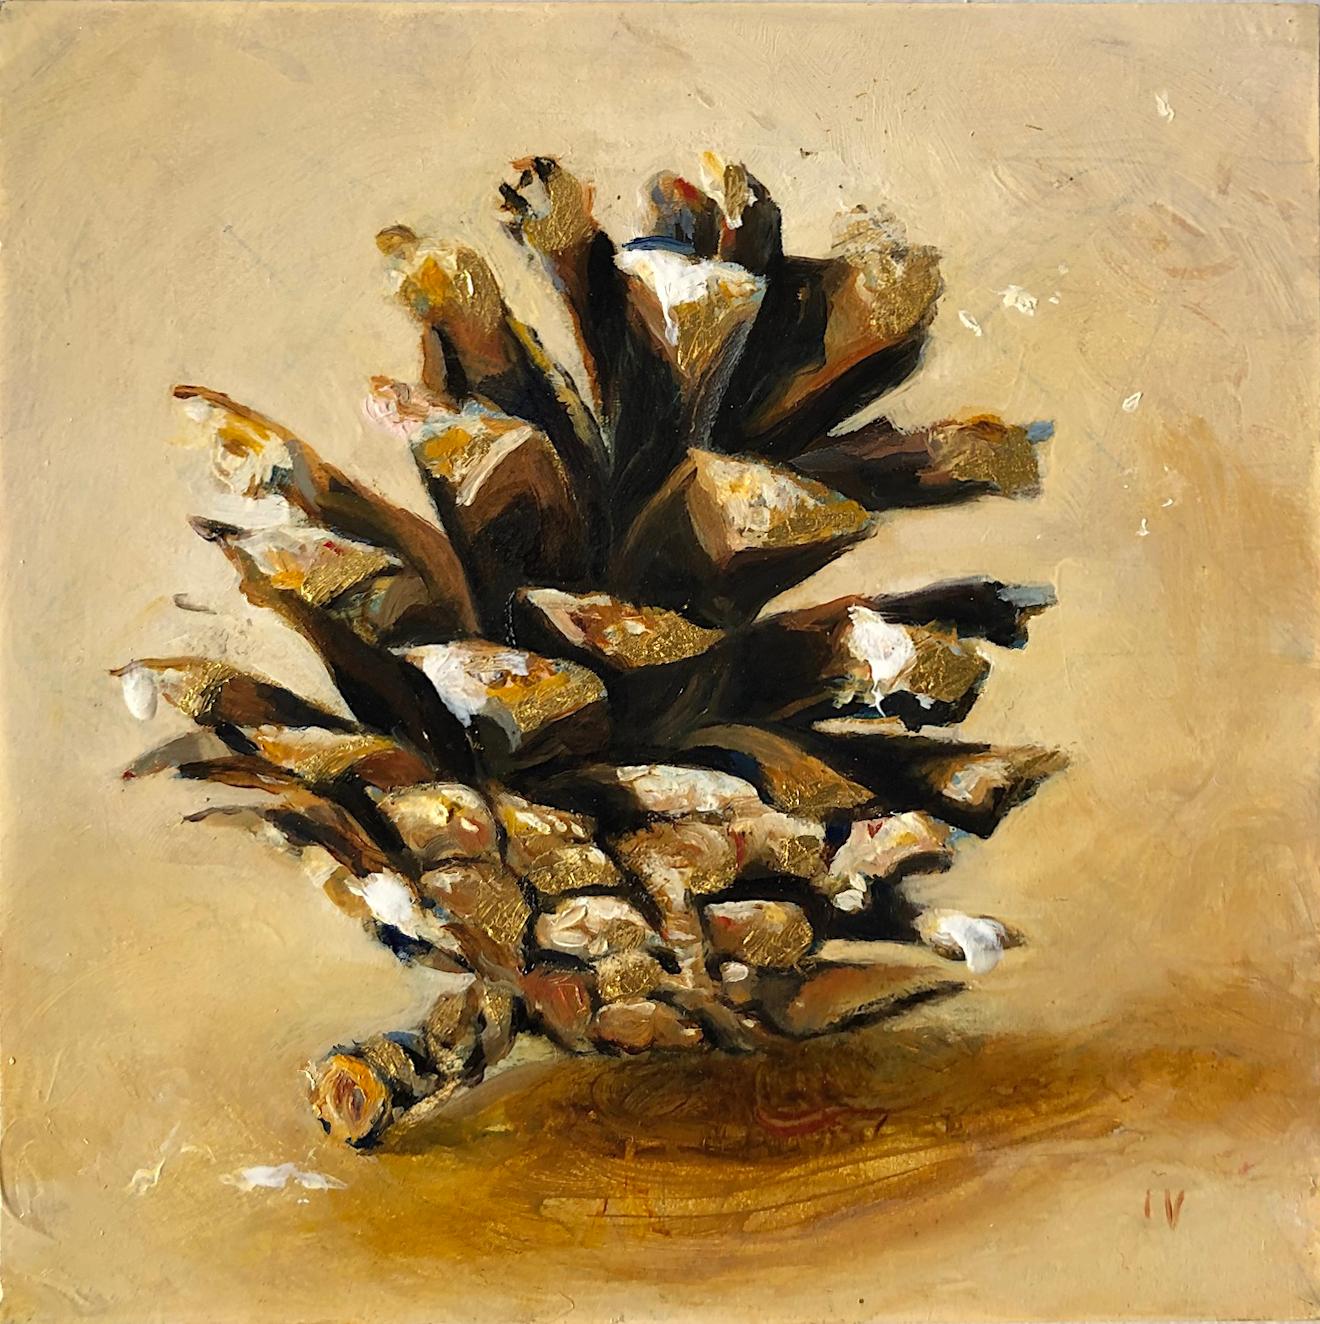 Pinecone n°9 ( Nature morte réaliste contemporaine - Huile de pin avec feuille d'or - Nature morte réaliste) - Mixed Media Art de Matthew Hopkins